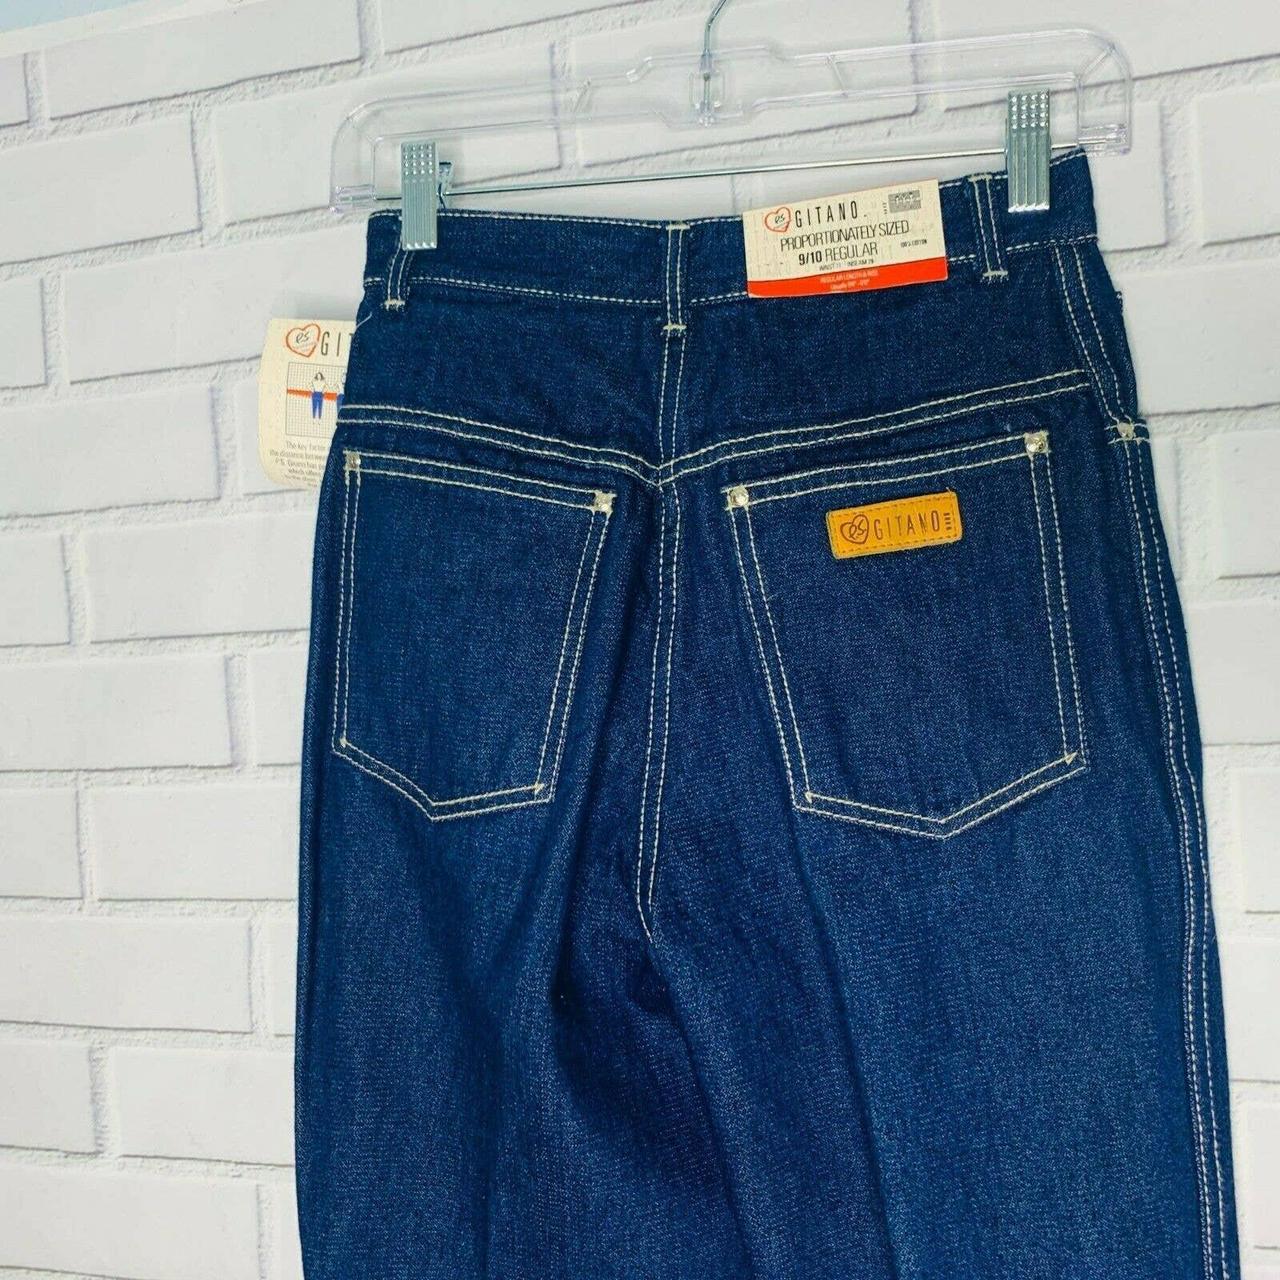 NWT vintage Gitano waist - Depop dark jeans high wash